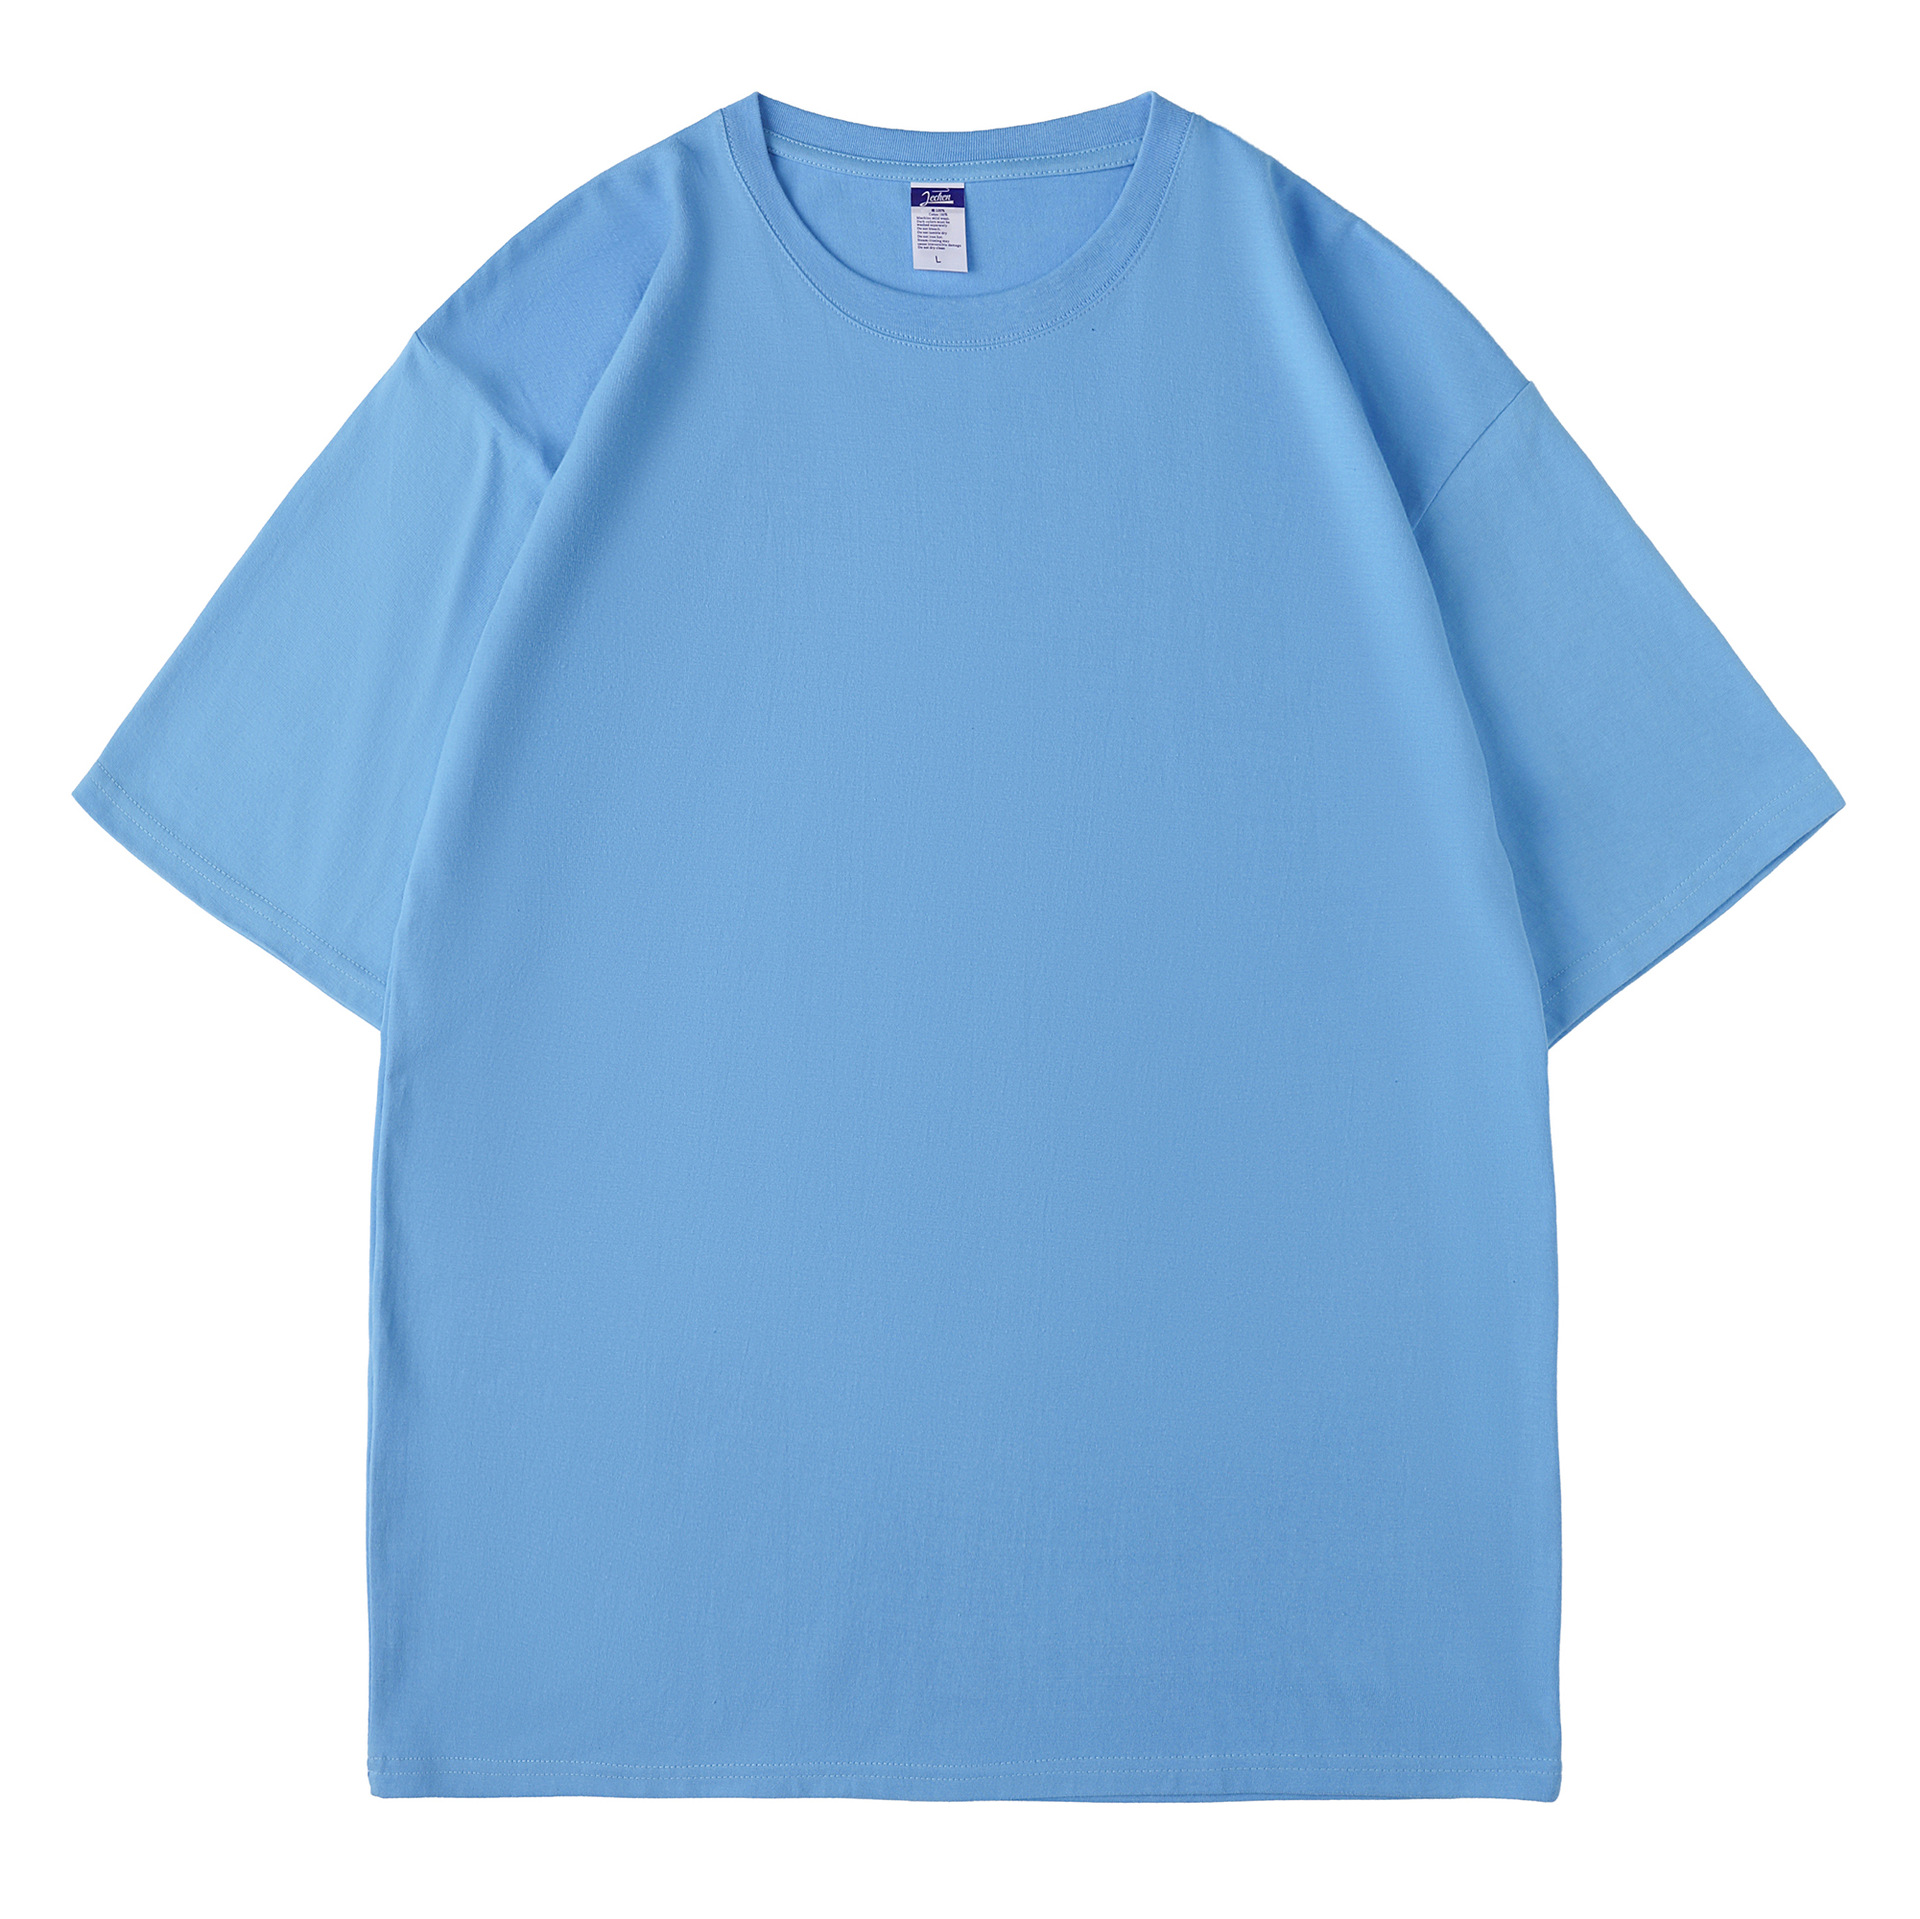 السيدات طباعة T ملابس الصيف الإناث القمصان القصيرة للأكمام 1xH78